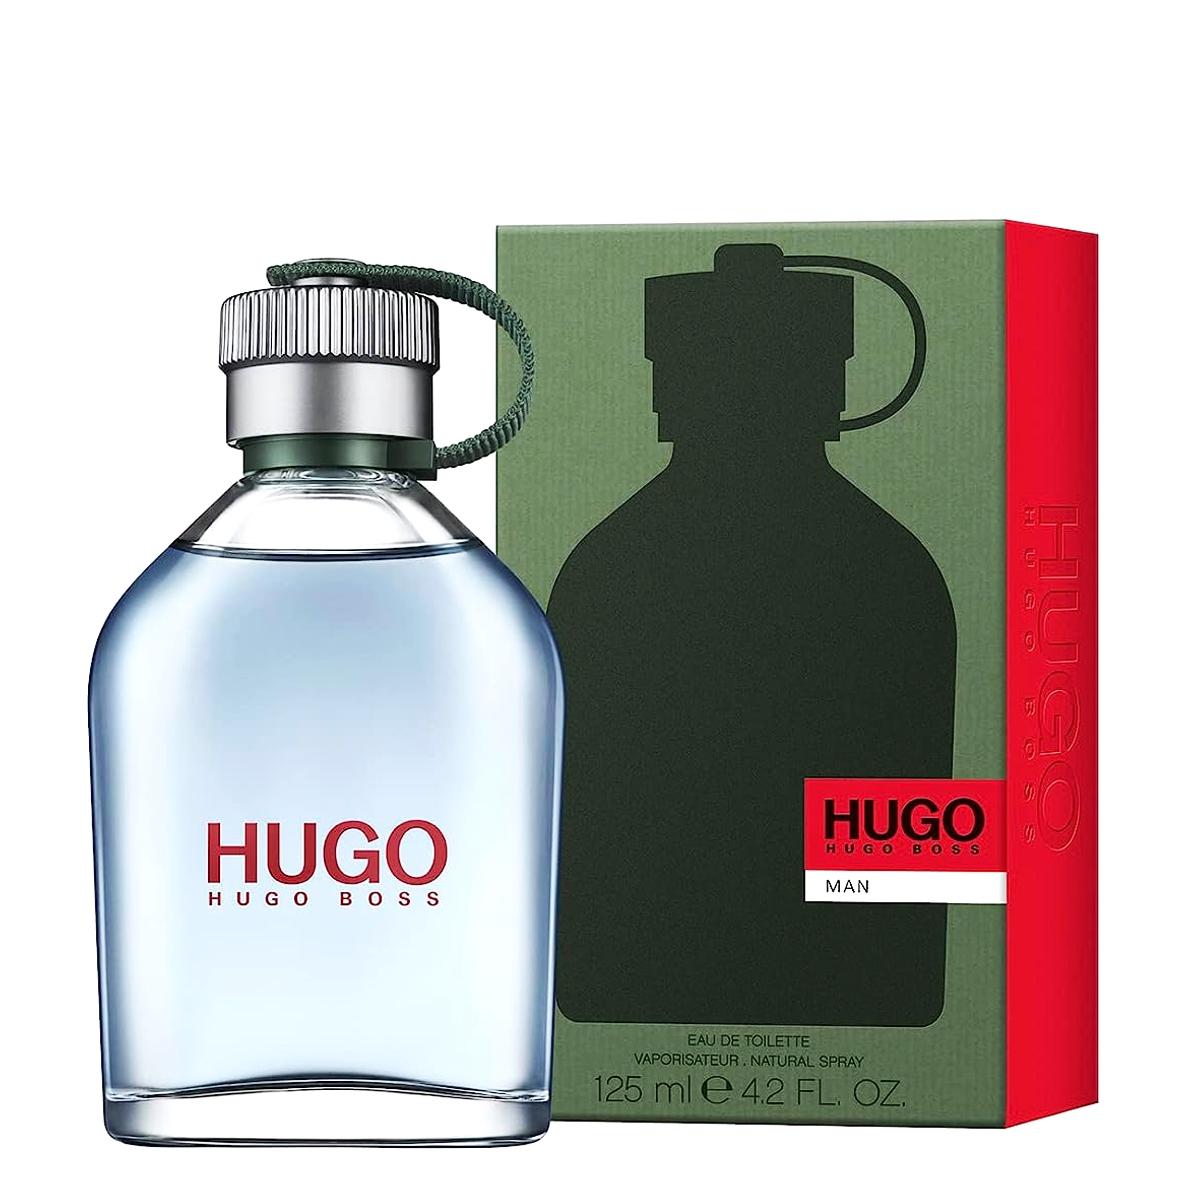 HUGO BOSS Muška toaletna voda Hugo Man V125ml